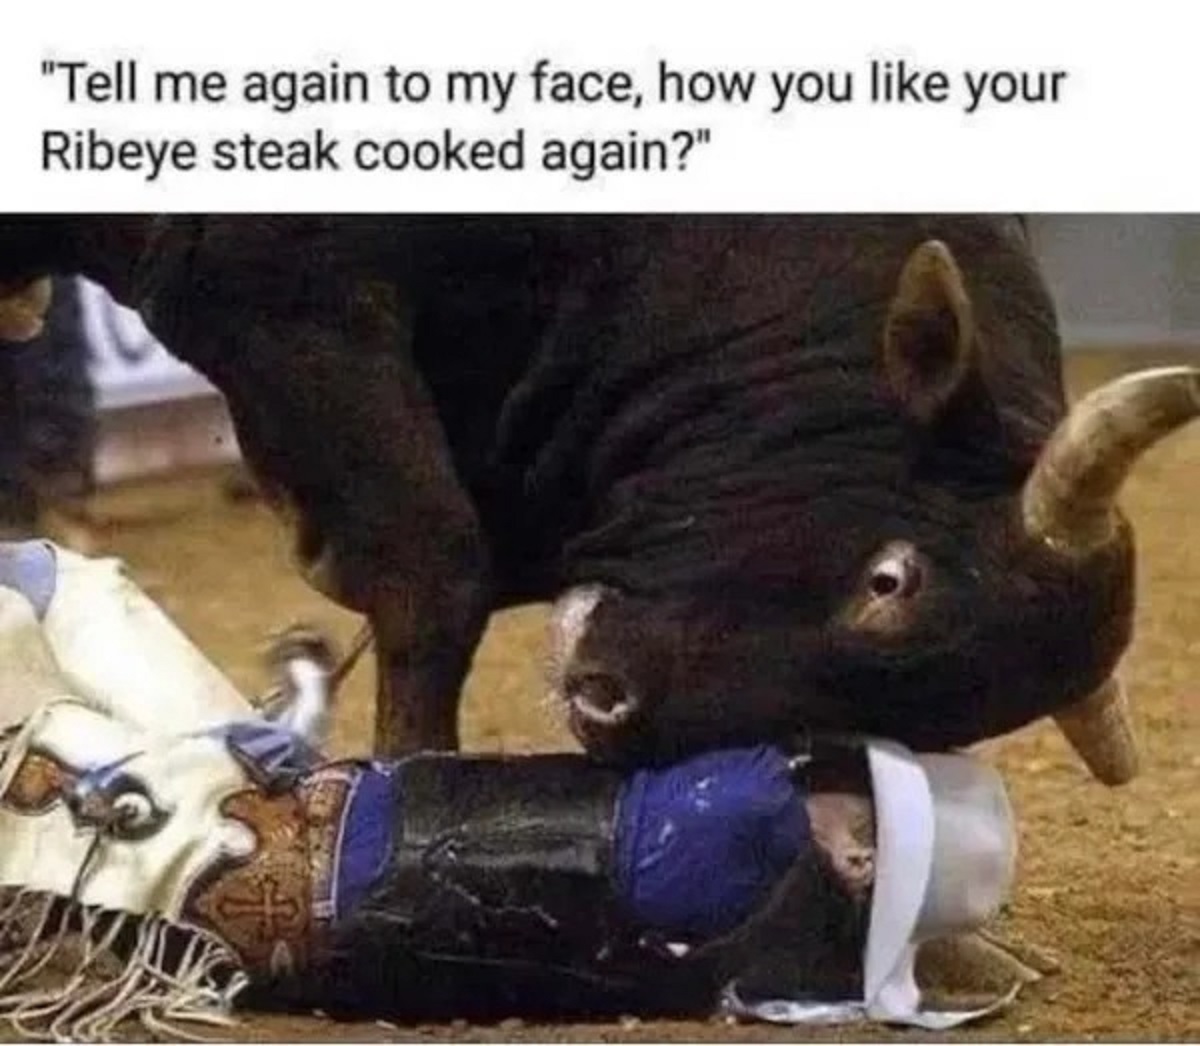 tell me again how you like your ribeye steak cooked - "Tell me again to my face, how you your Ribeye steak cooked again?"